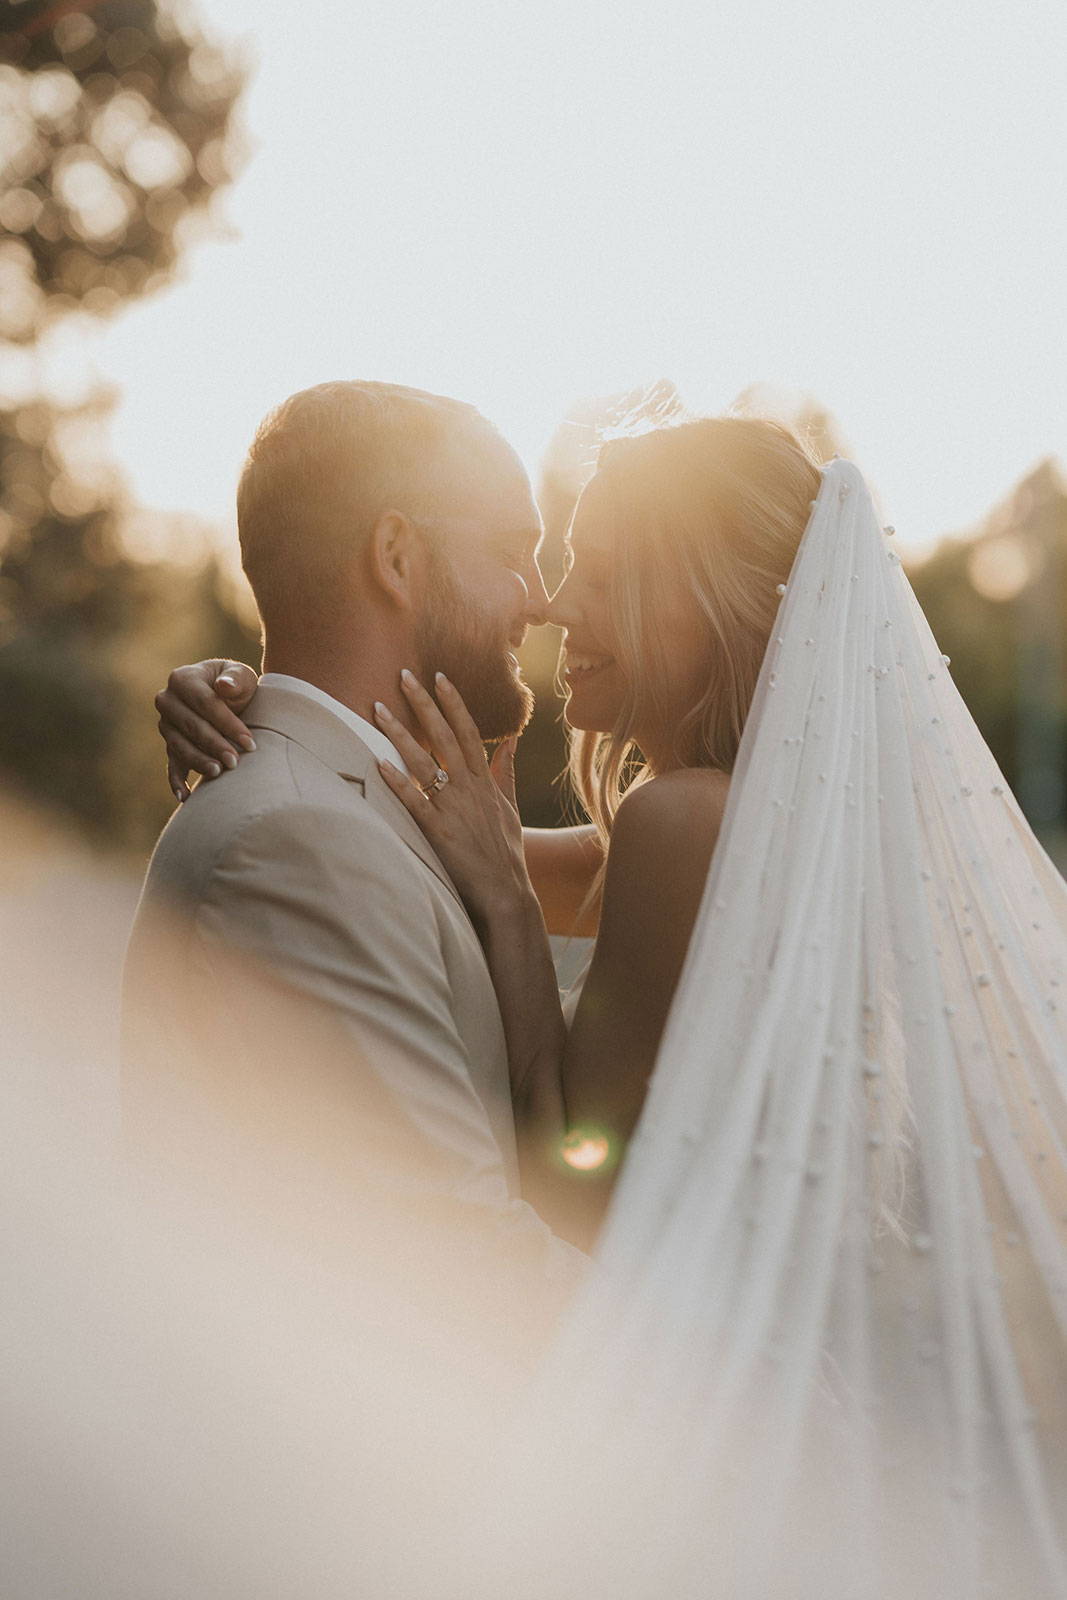 Kuss zwischen Braut und Bräutigam